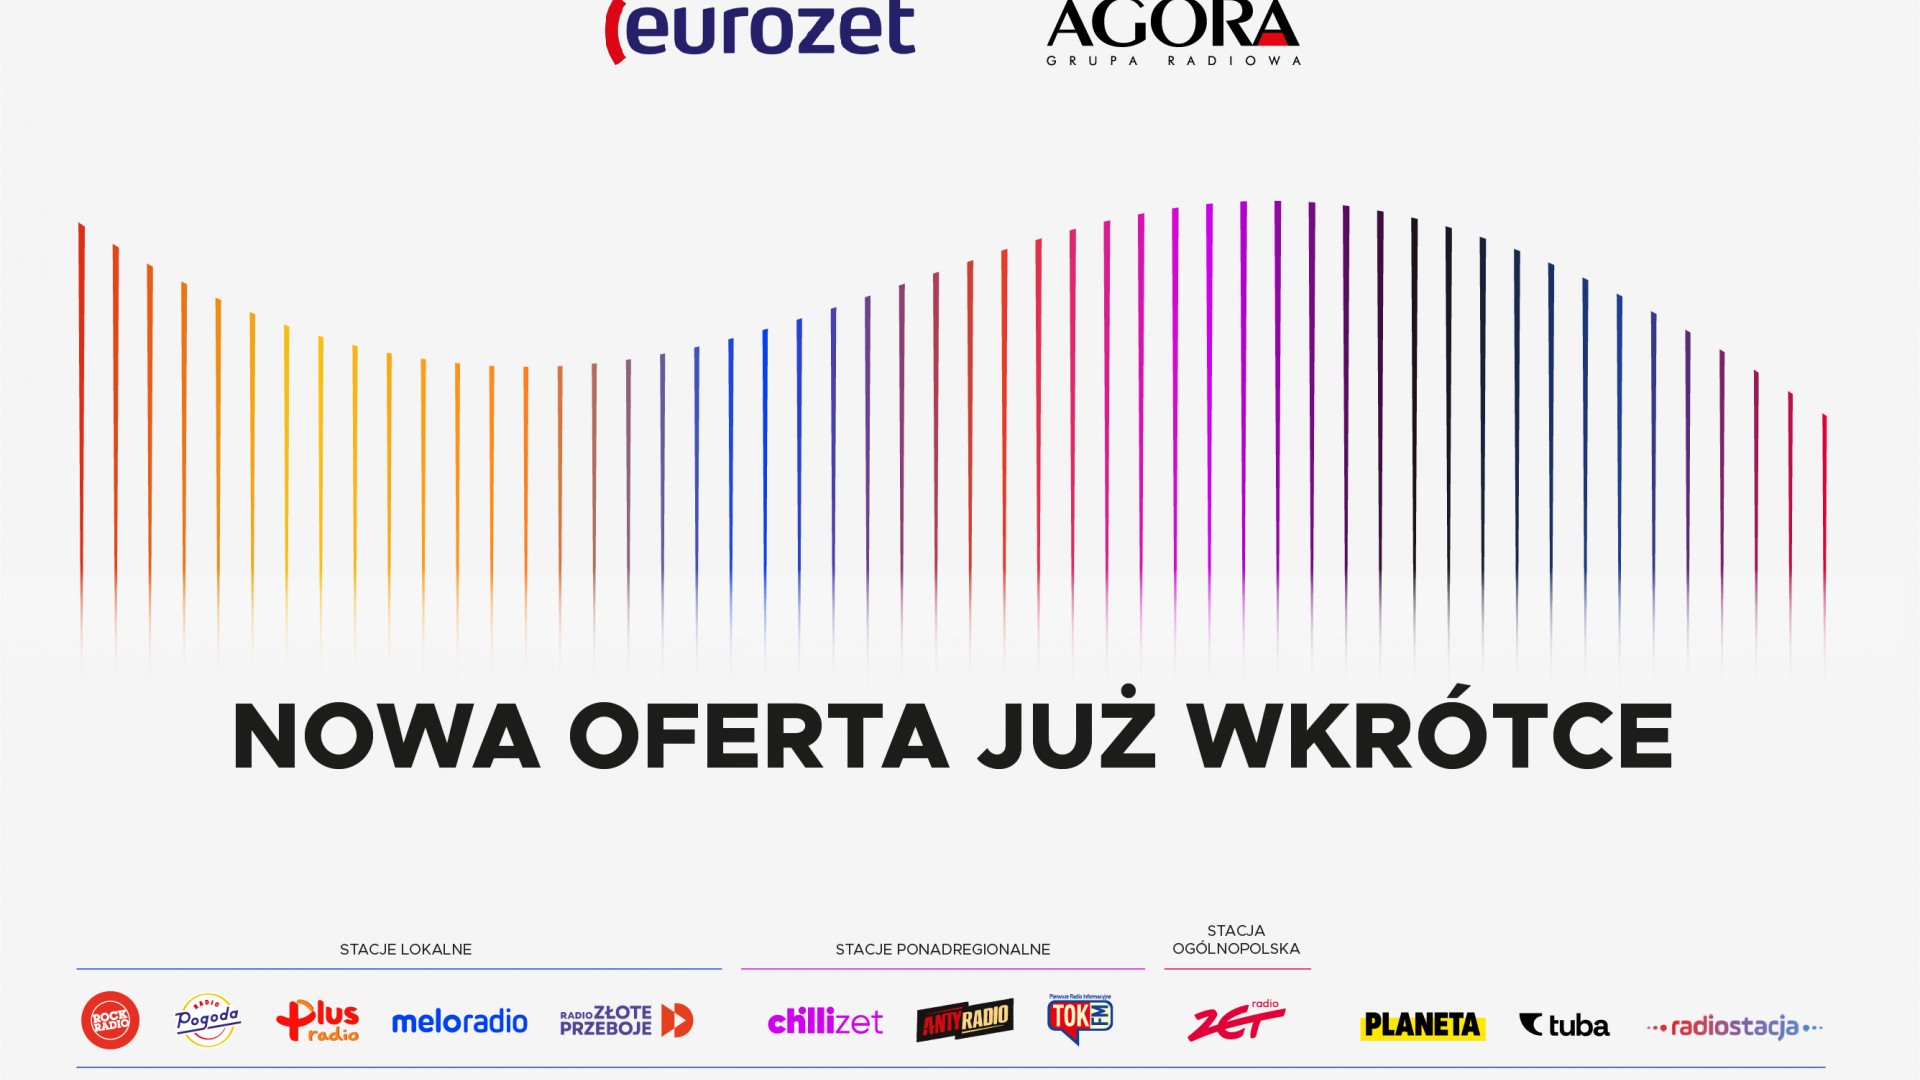 Grupa Eurozet – połączone Grupa Radiowa Agory i Eurozet od dziś pod jednym szyldem